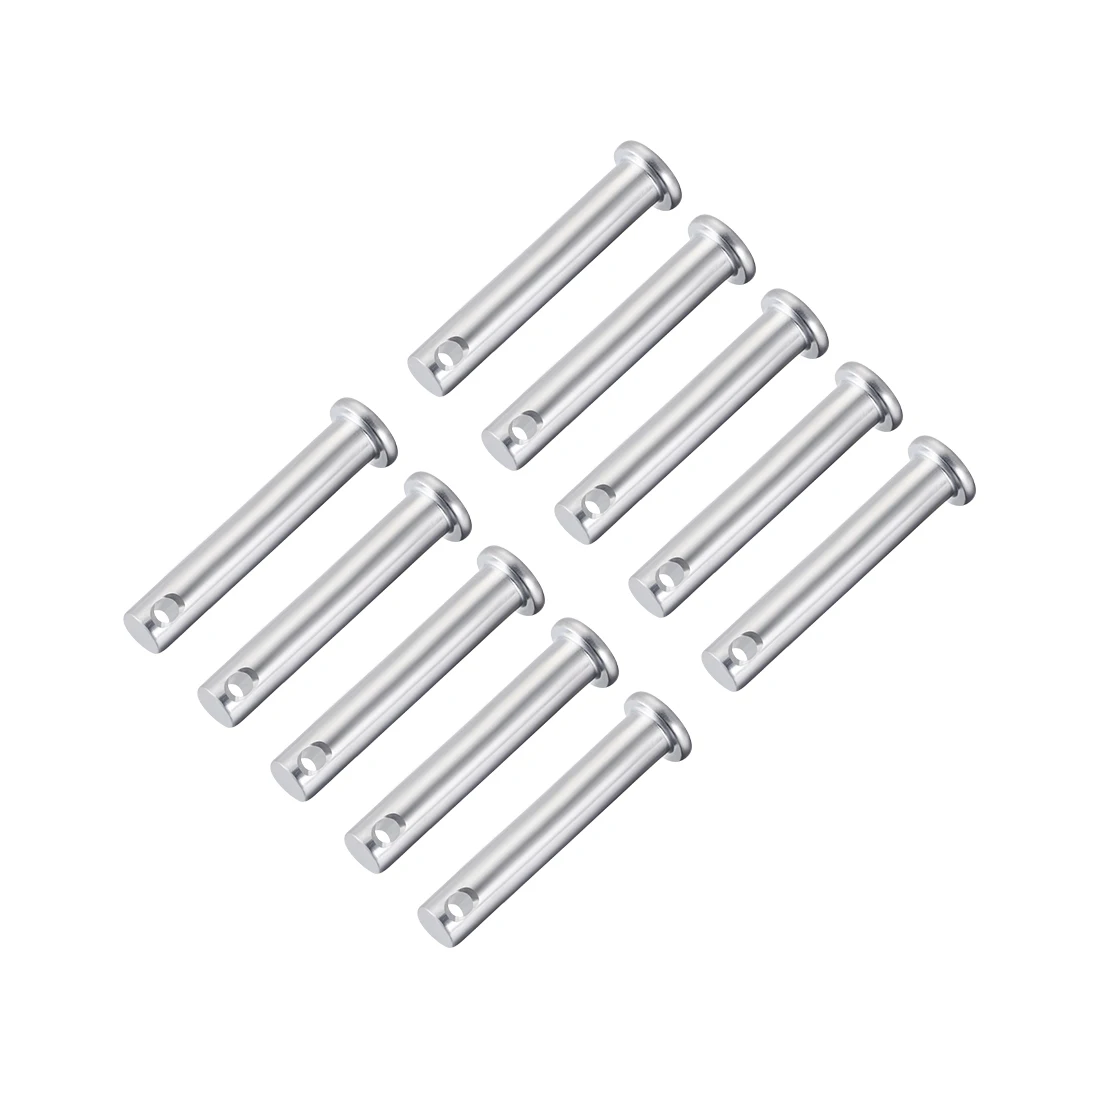 

uxcell Single Hole Clevis Pins,8mm x 45mm Flat Head Zinc-Plating Steel 10 Pcs